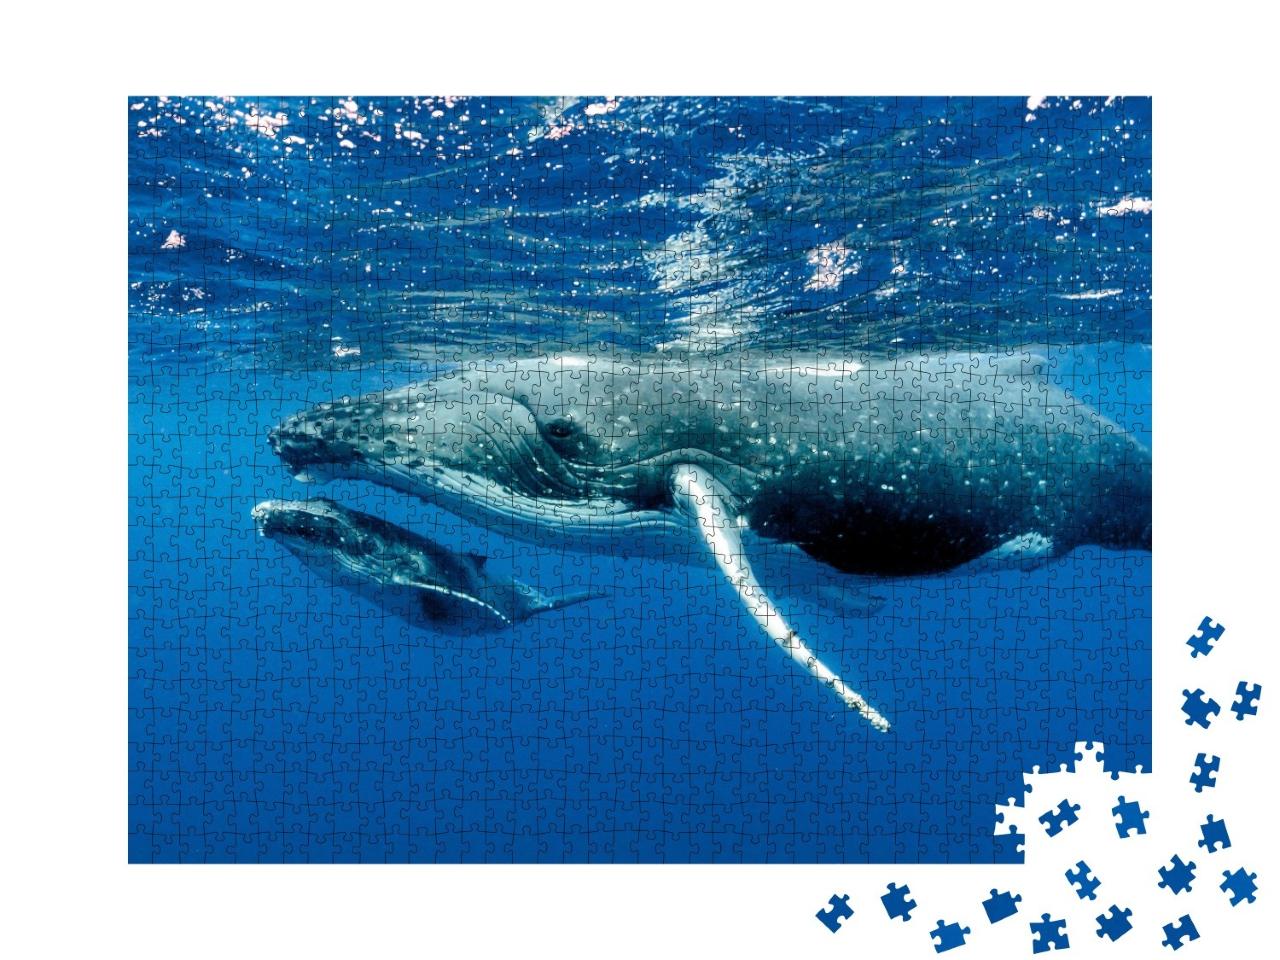 Puzzle de 1000 pièces « Deux baleines à bosse sous la surface de l'océan Pacifique »